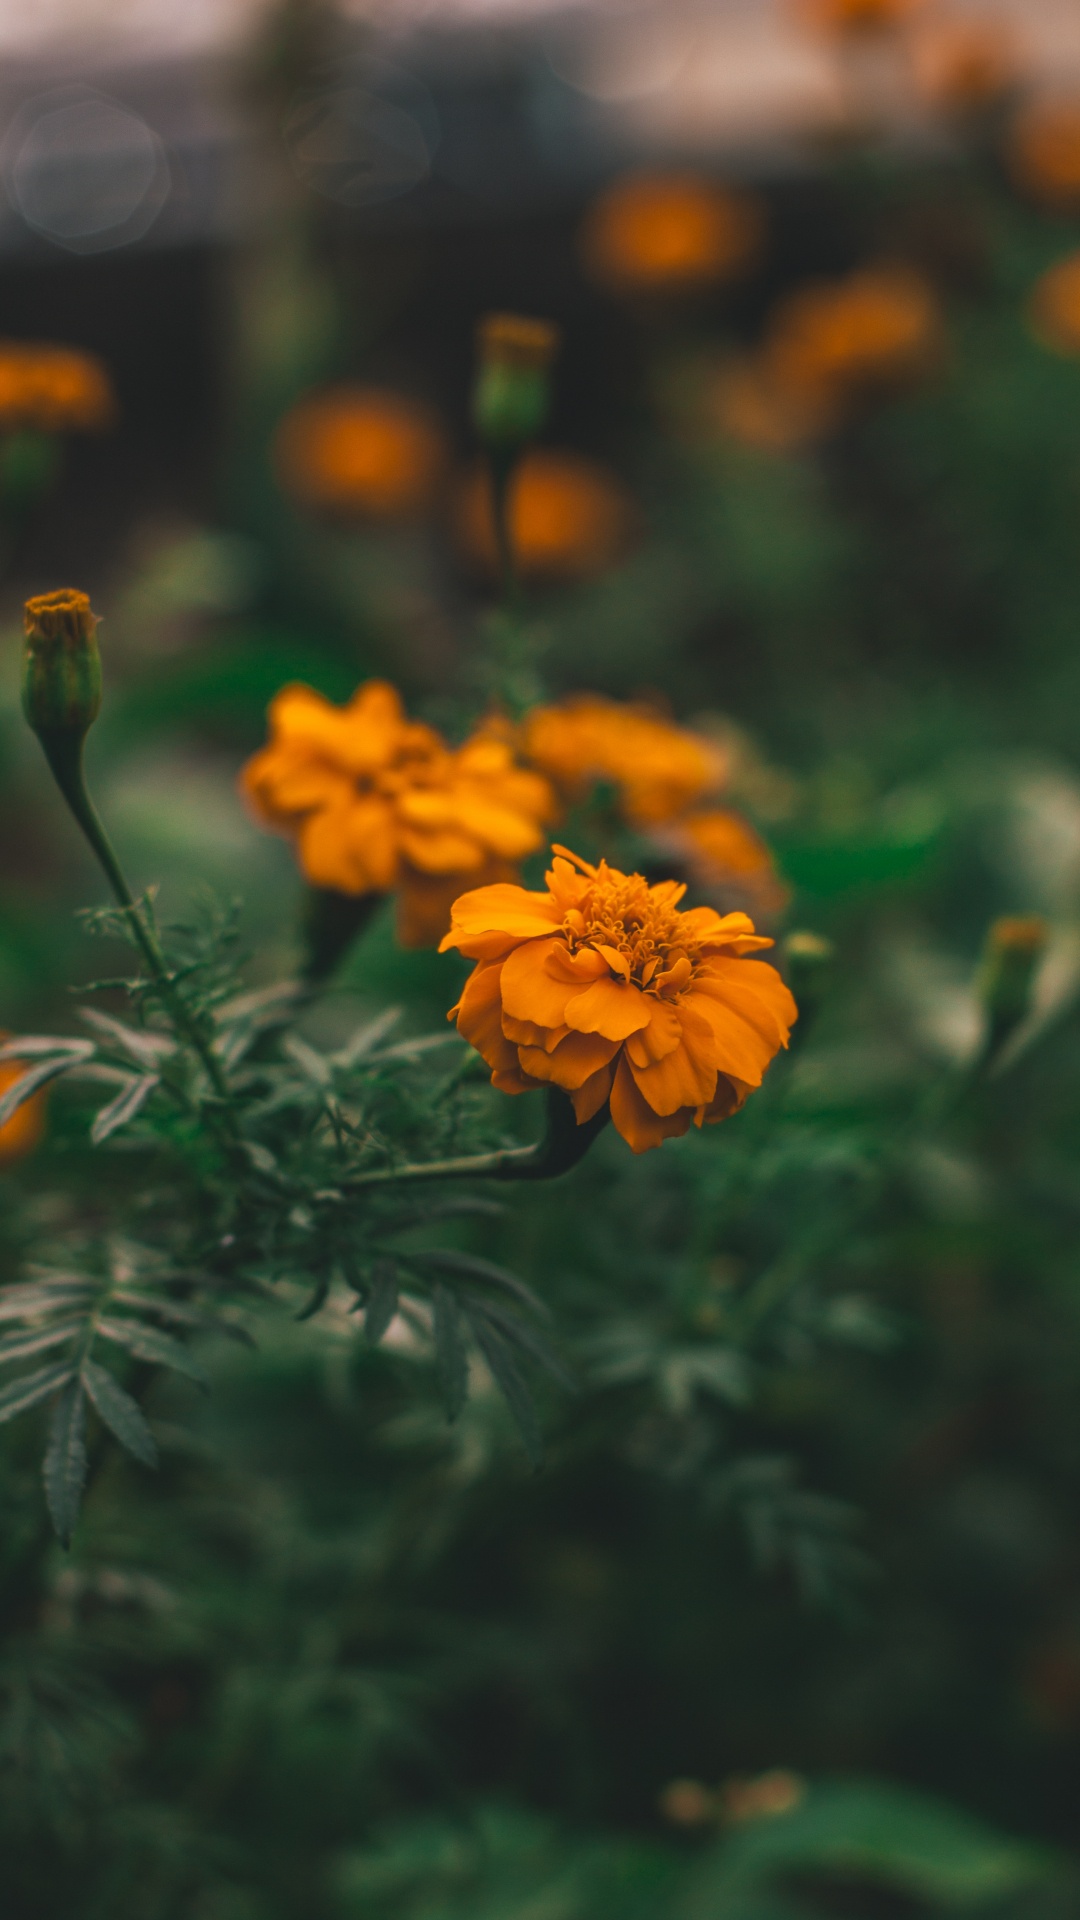 Yellow Flower in Tilt Shift Lens. Wallpaper in 1080x1920 Resolution